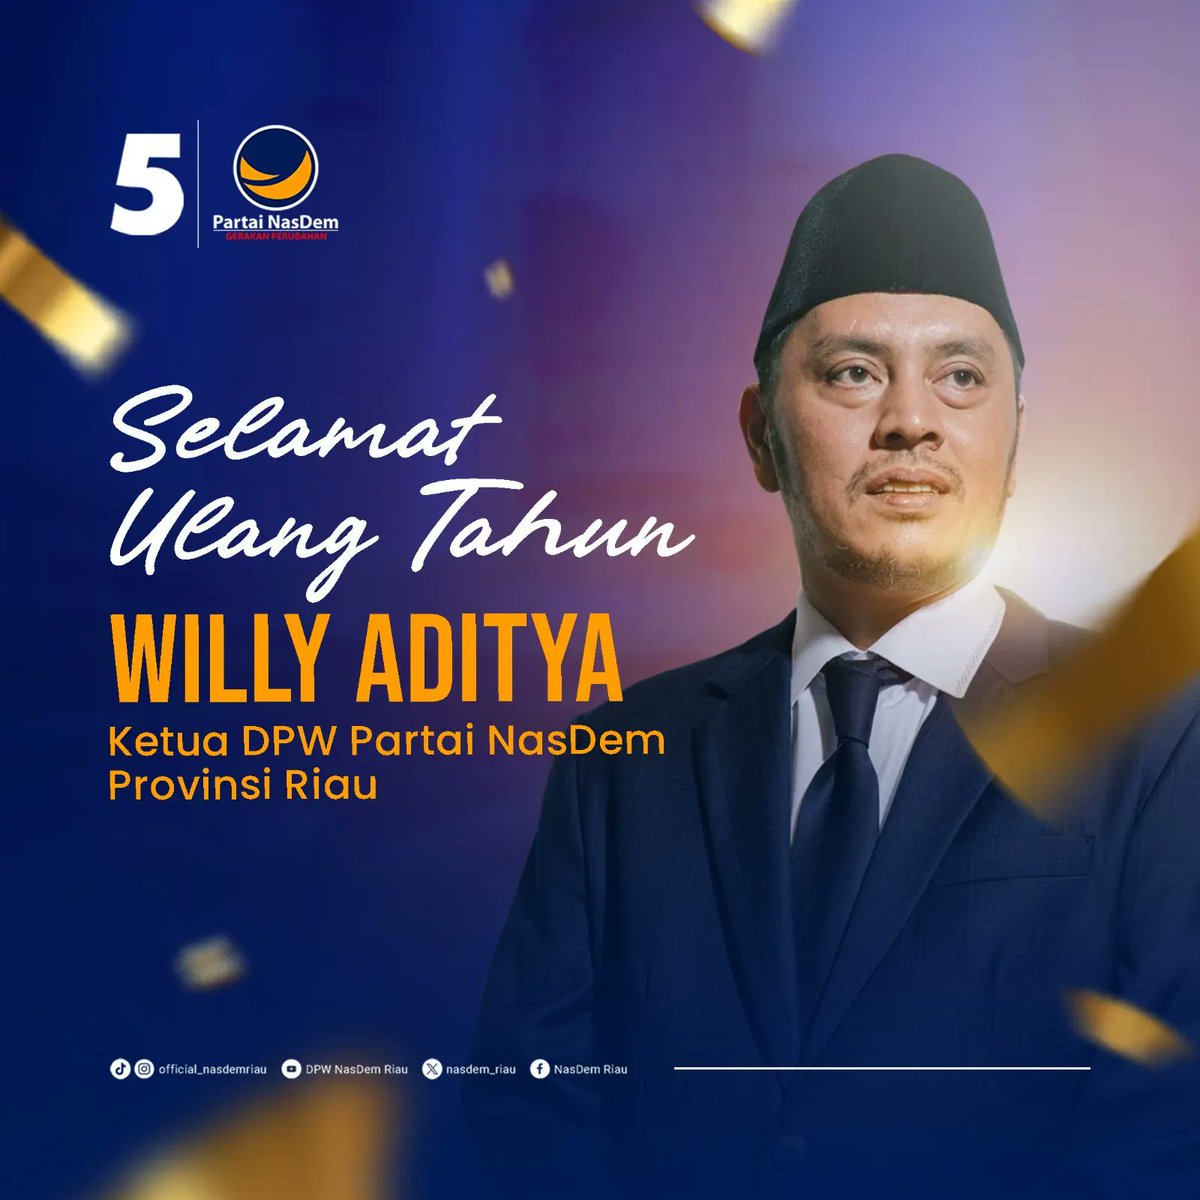 Selamat Ulang Tahun Kakak @adityawilly
Ketua DPW Partai NasDem Provinsi Riau. 

'Semoga senantiasa diberi kesehatan dan keberkahan dalam menjalani kehidupan'

Tetap semangat bergerak untuk mewujudkan Restorasi Indonesia. 

#UlangTahun #PartaiNasDem #NasDemRiau #SukaCita